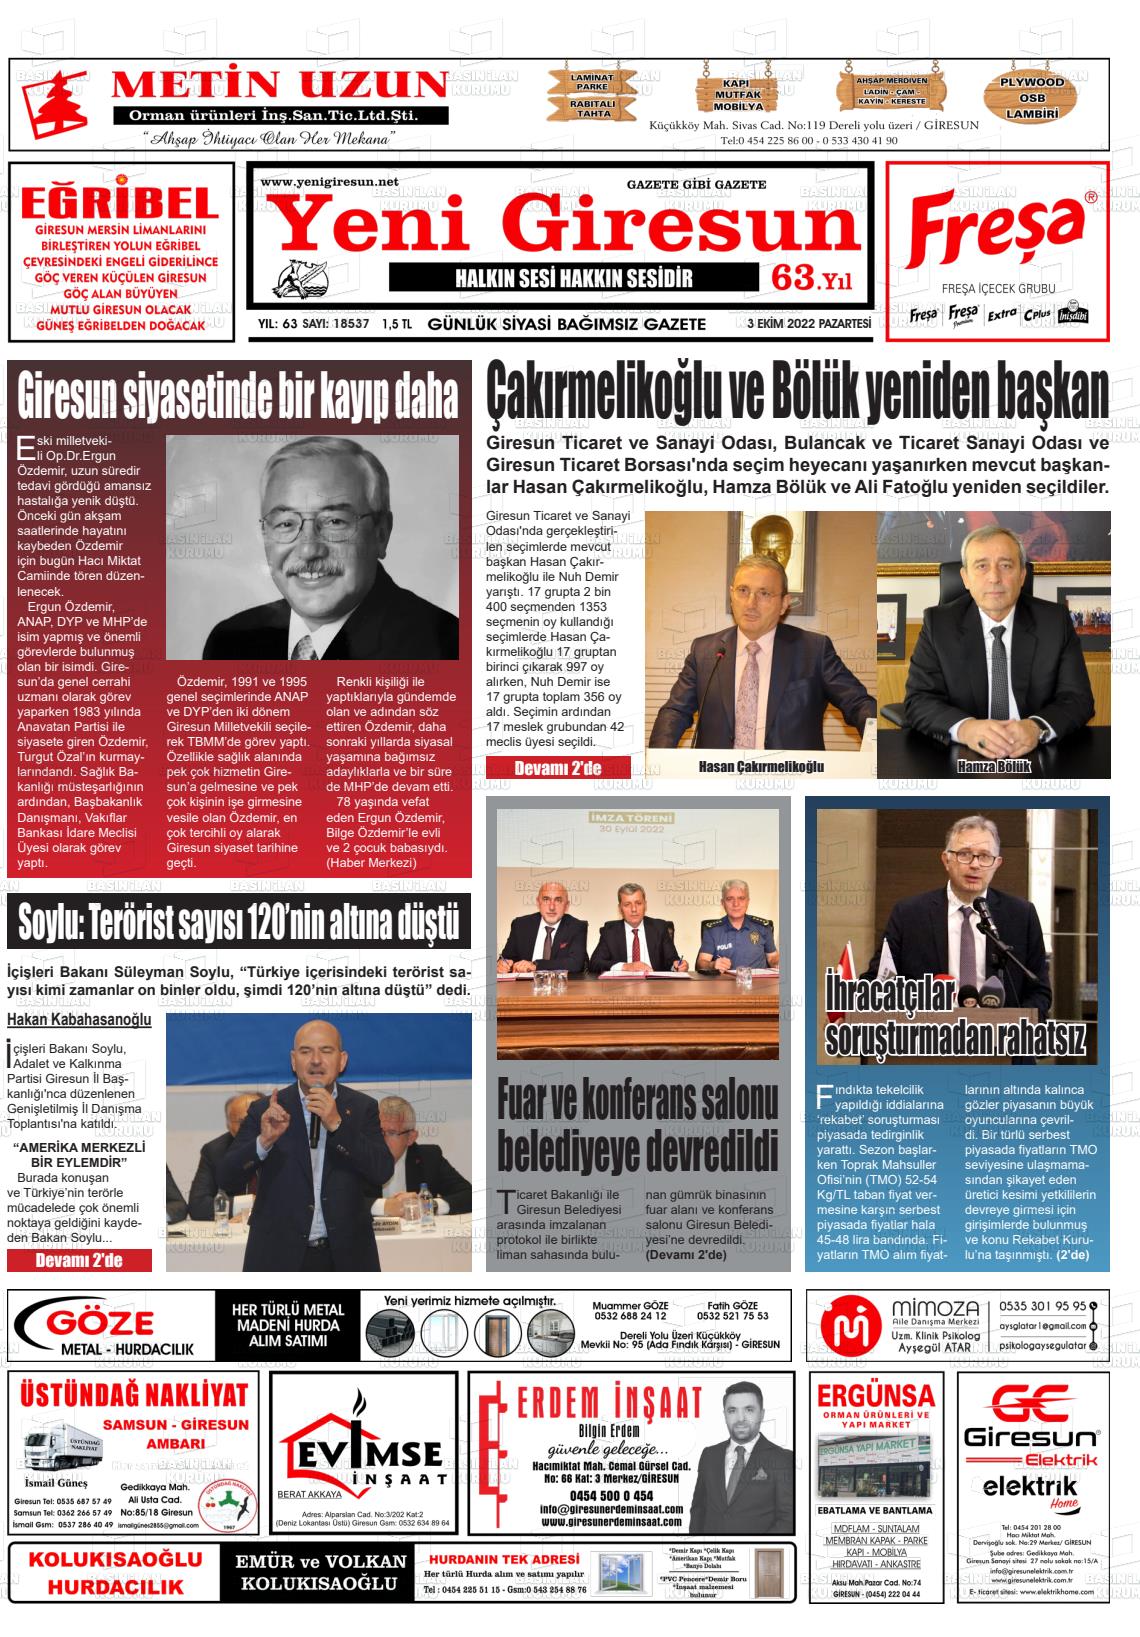 03 Ekim 2022 Yeni Giresun Gazete Manşeti